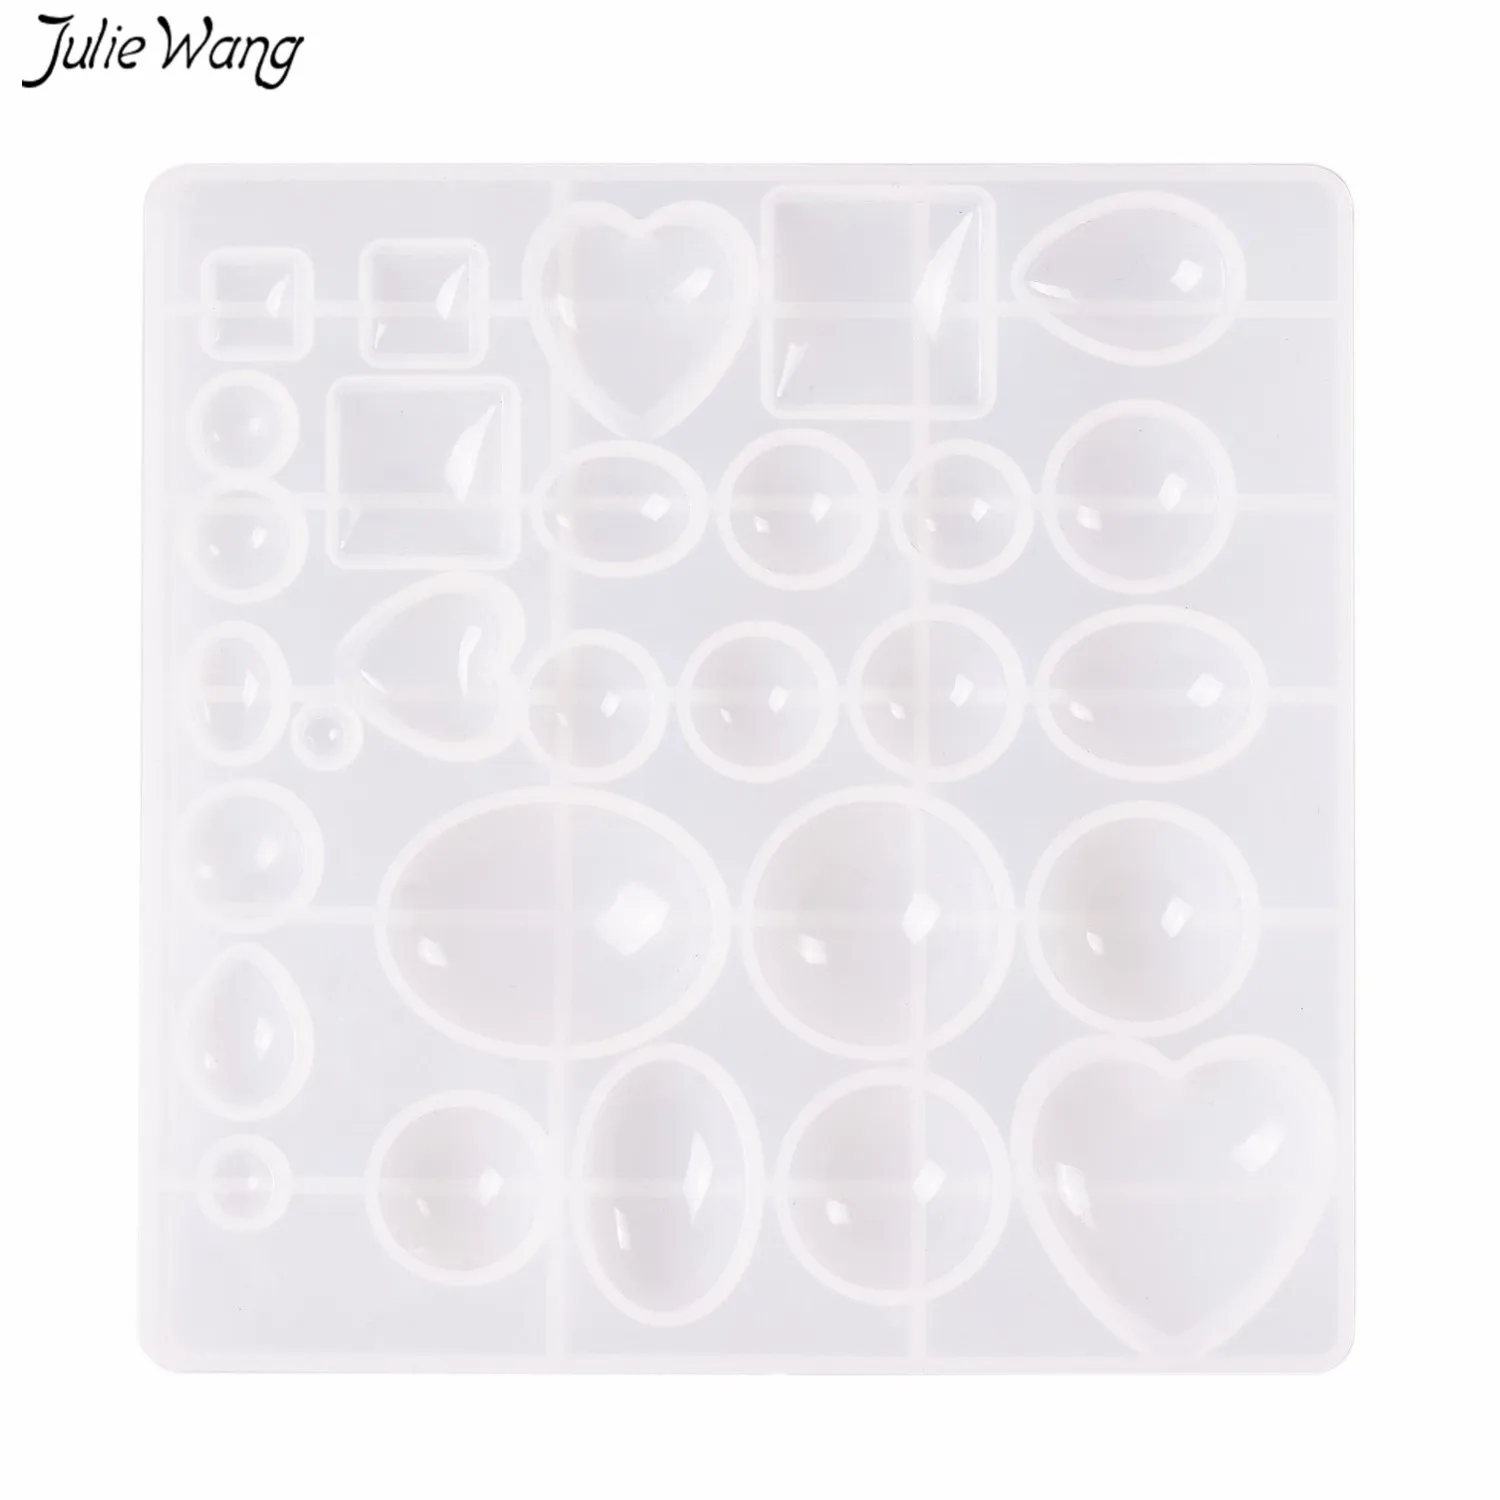 Julie Wang 1 шт. смешивания форма из смолы силиконовые комбинированная форма закладки цепочки и ожерелья браслет кулон решений эпоксидной смолы